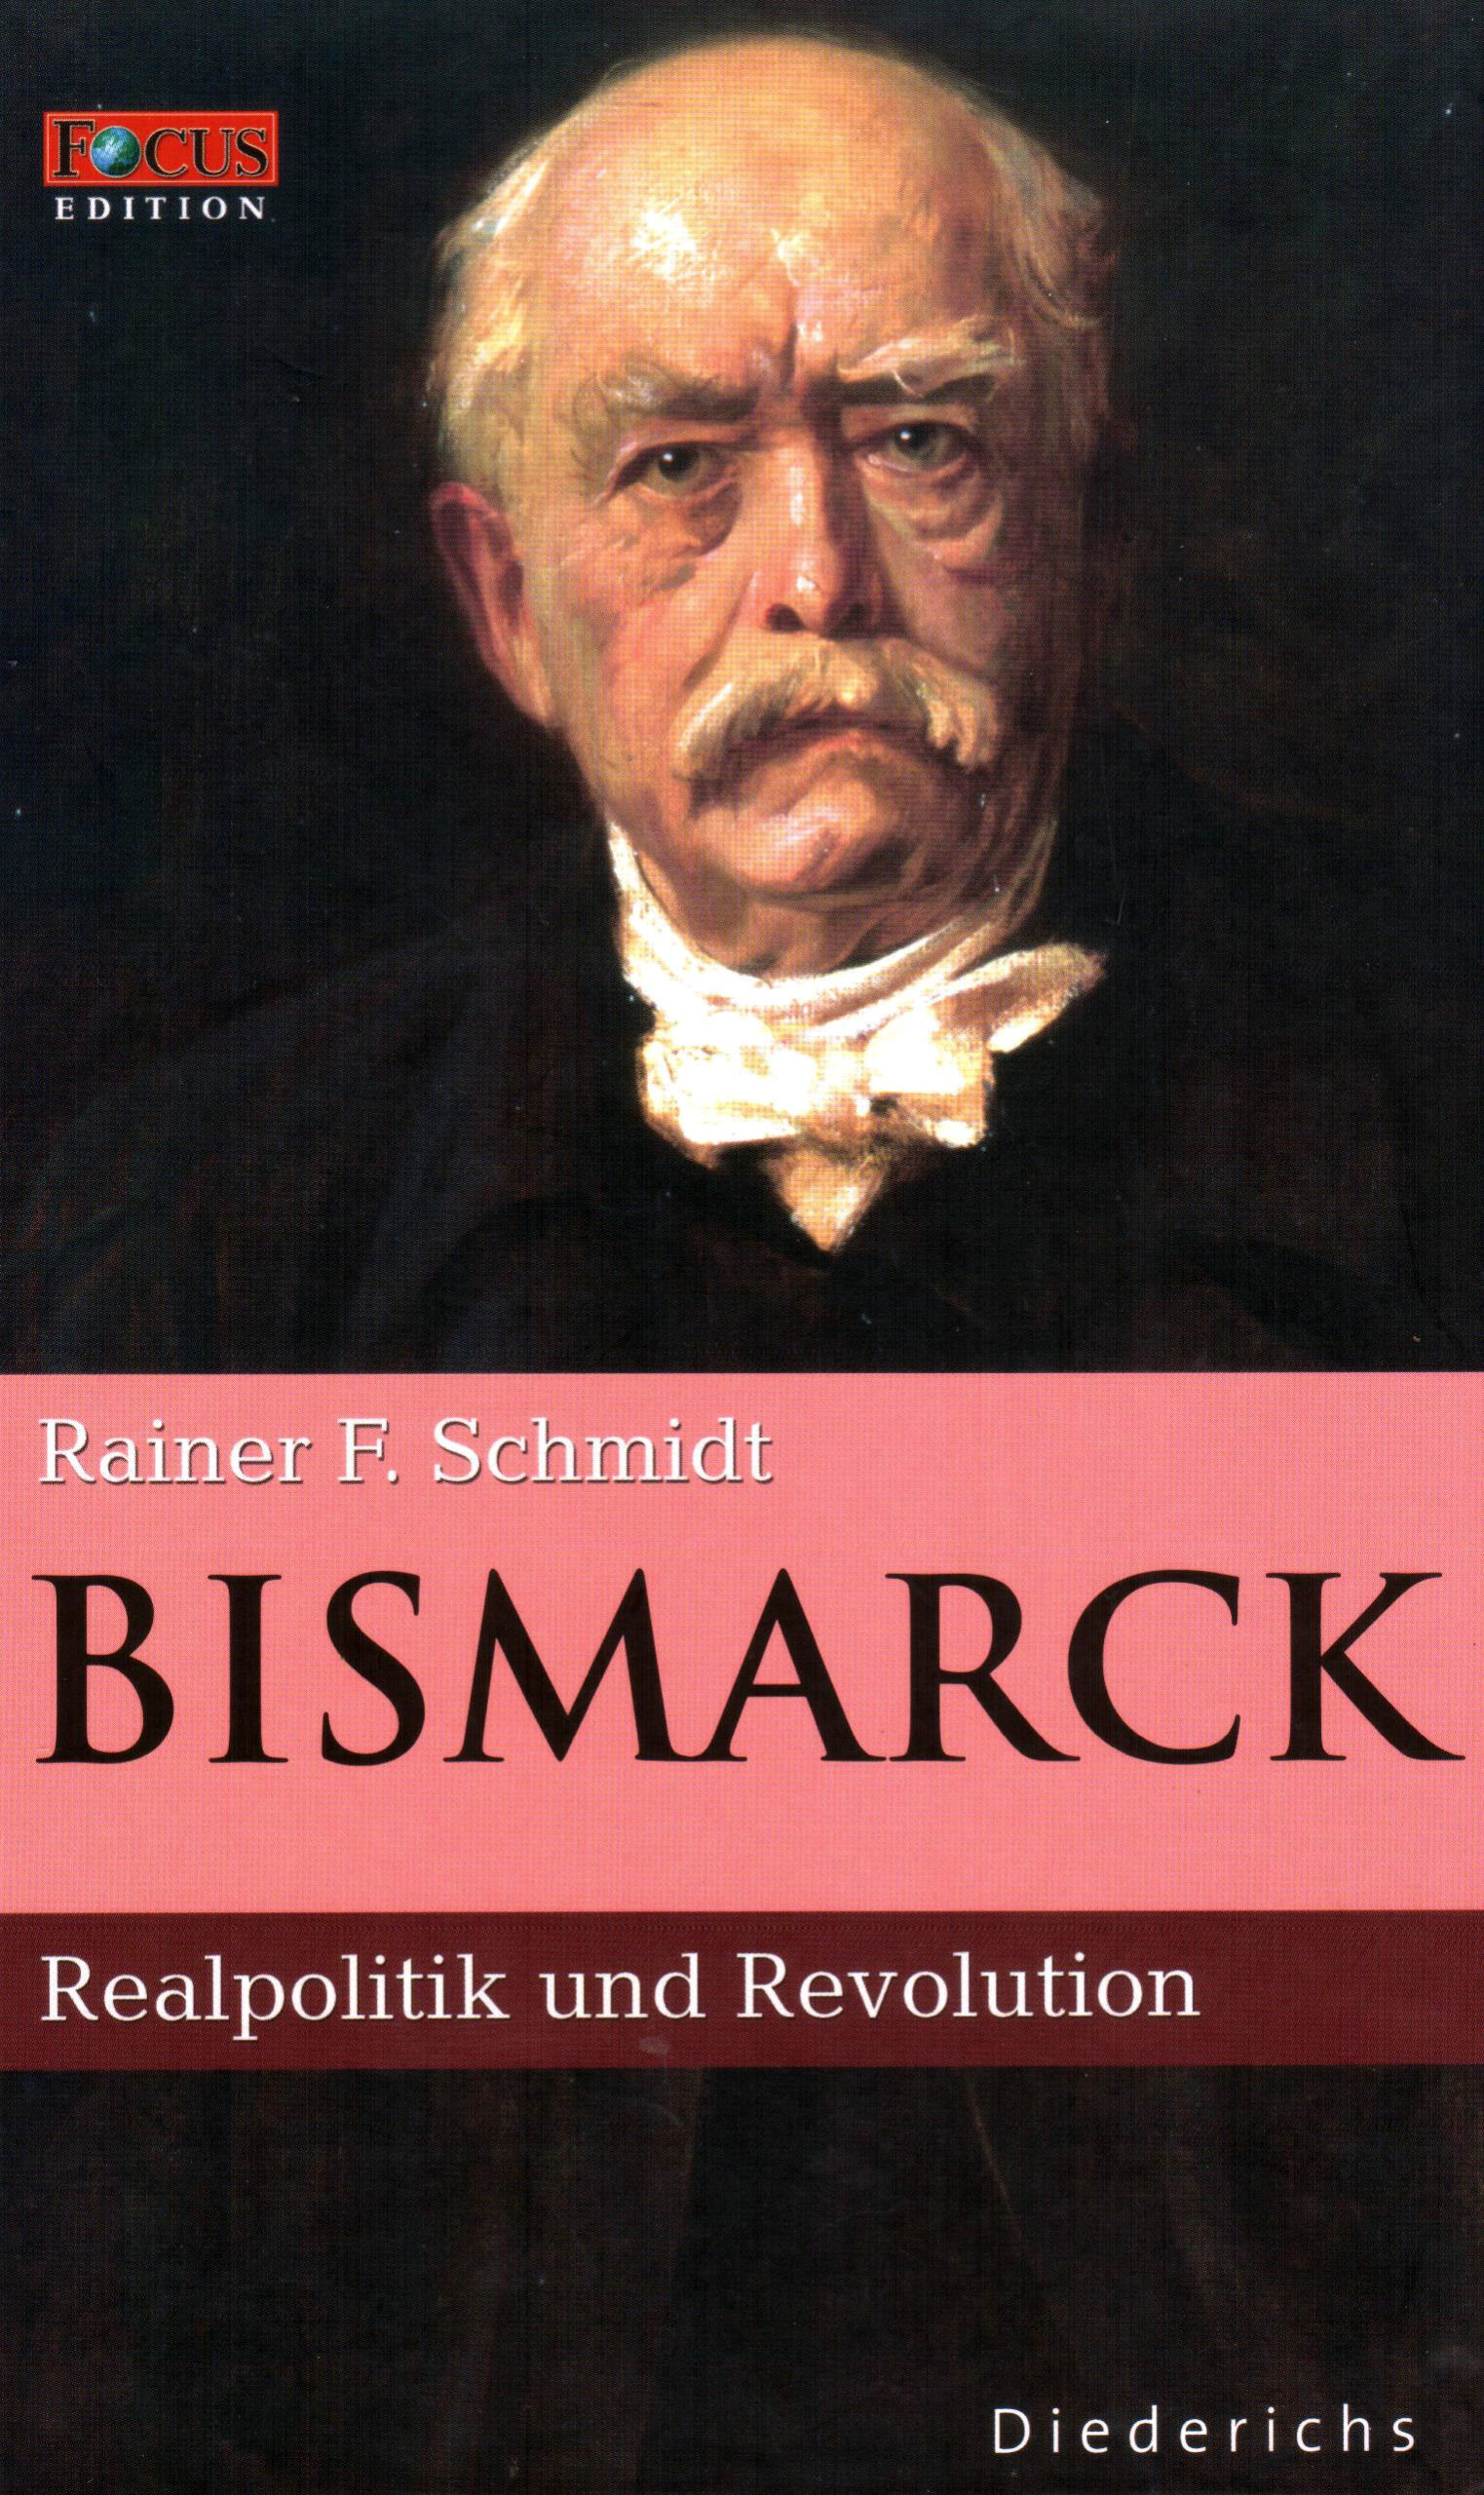 FOCUS Edition (Band 3) Bismarck – Realpolitik und Revolution